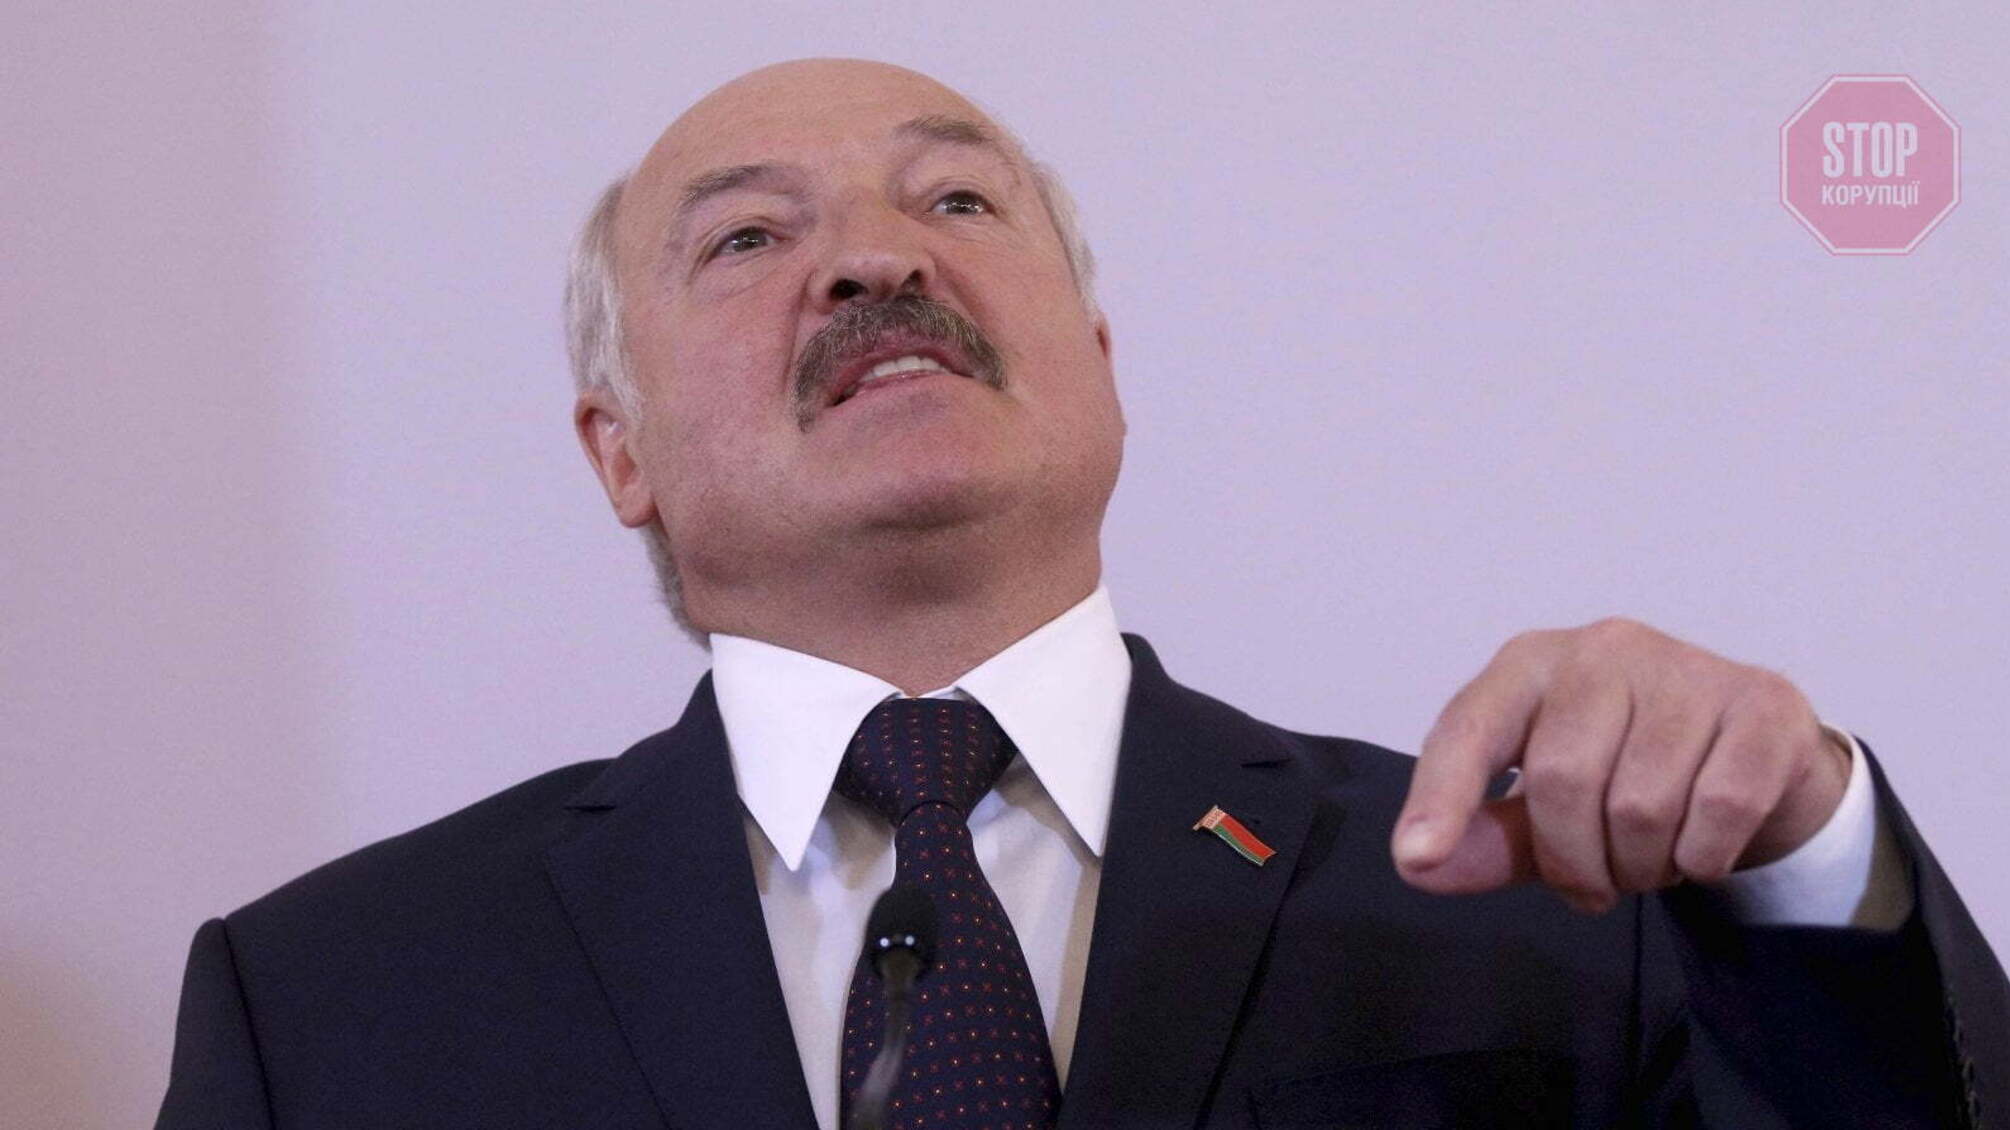 Лукашенко: Евросоюз подталкивает страны к Третьей мировой